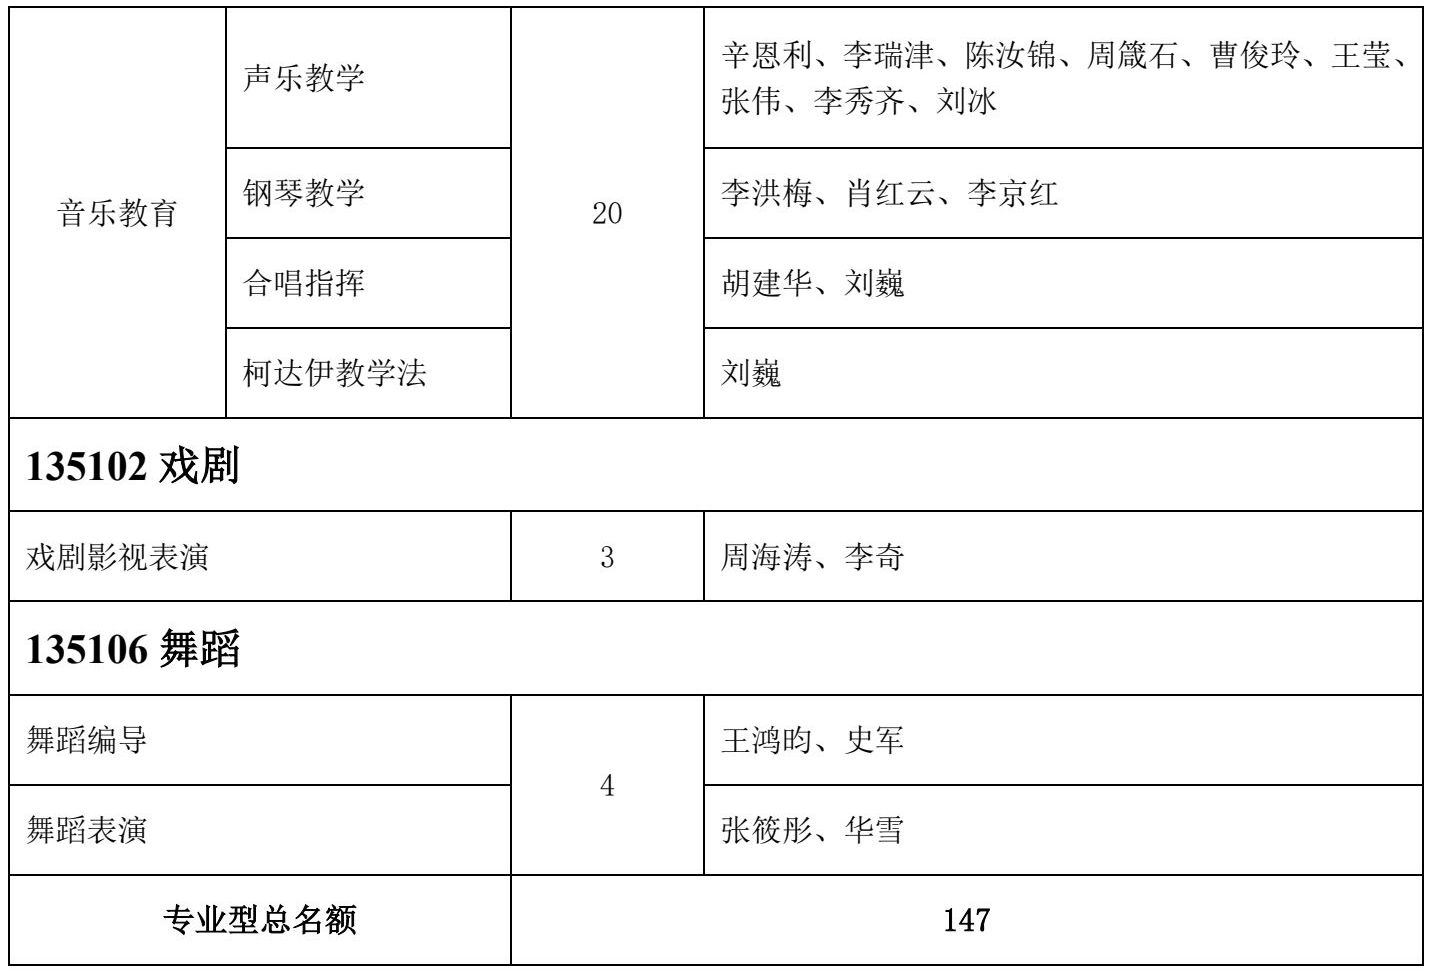 2022年天津音乐学院专业型硕士学位研究生招生简章